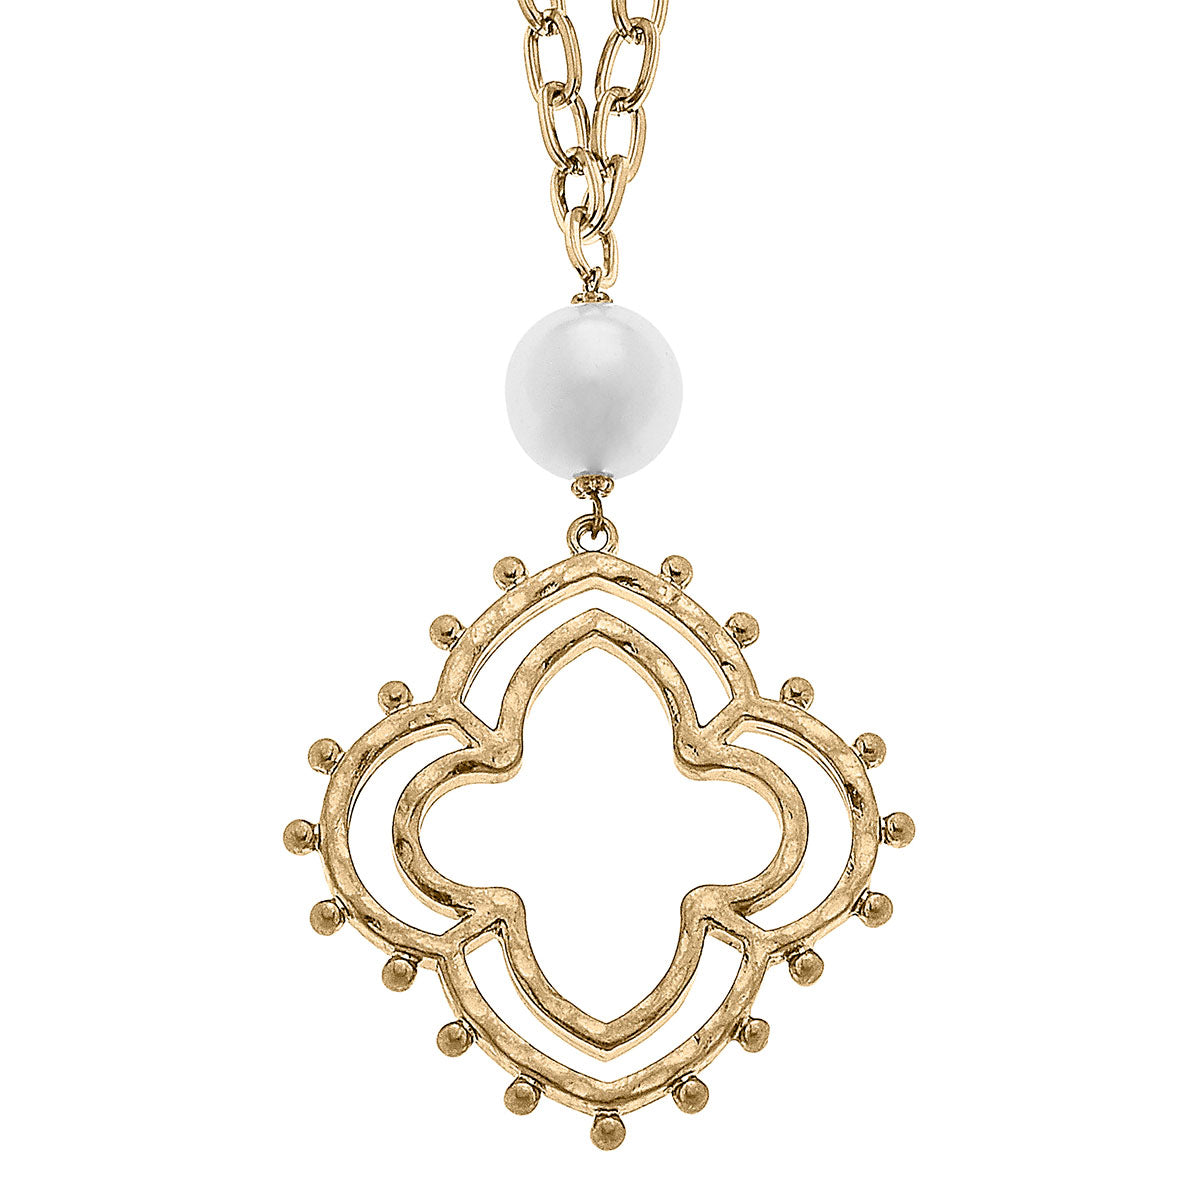 Julie Long Studded Metal Quatrefoil Necklace in Worn Gold